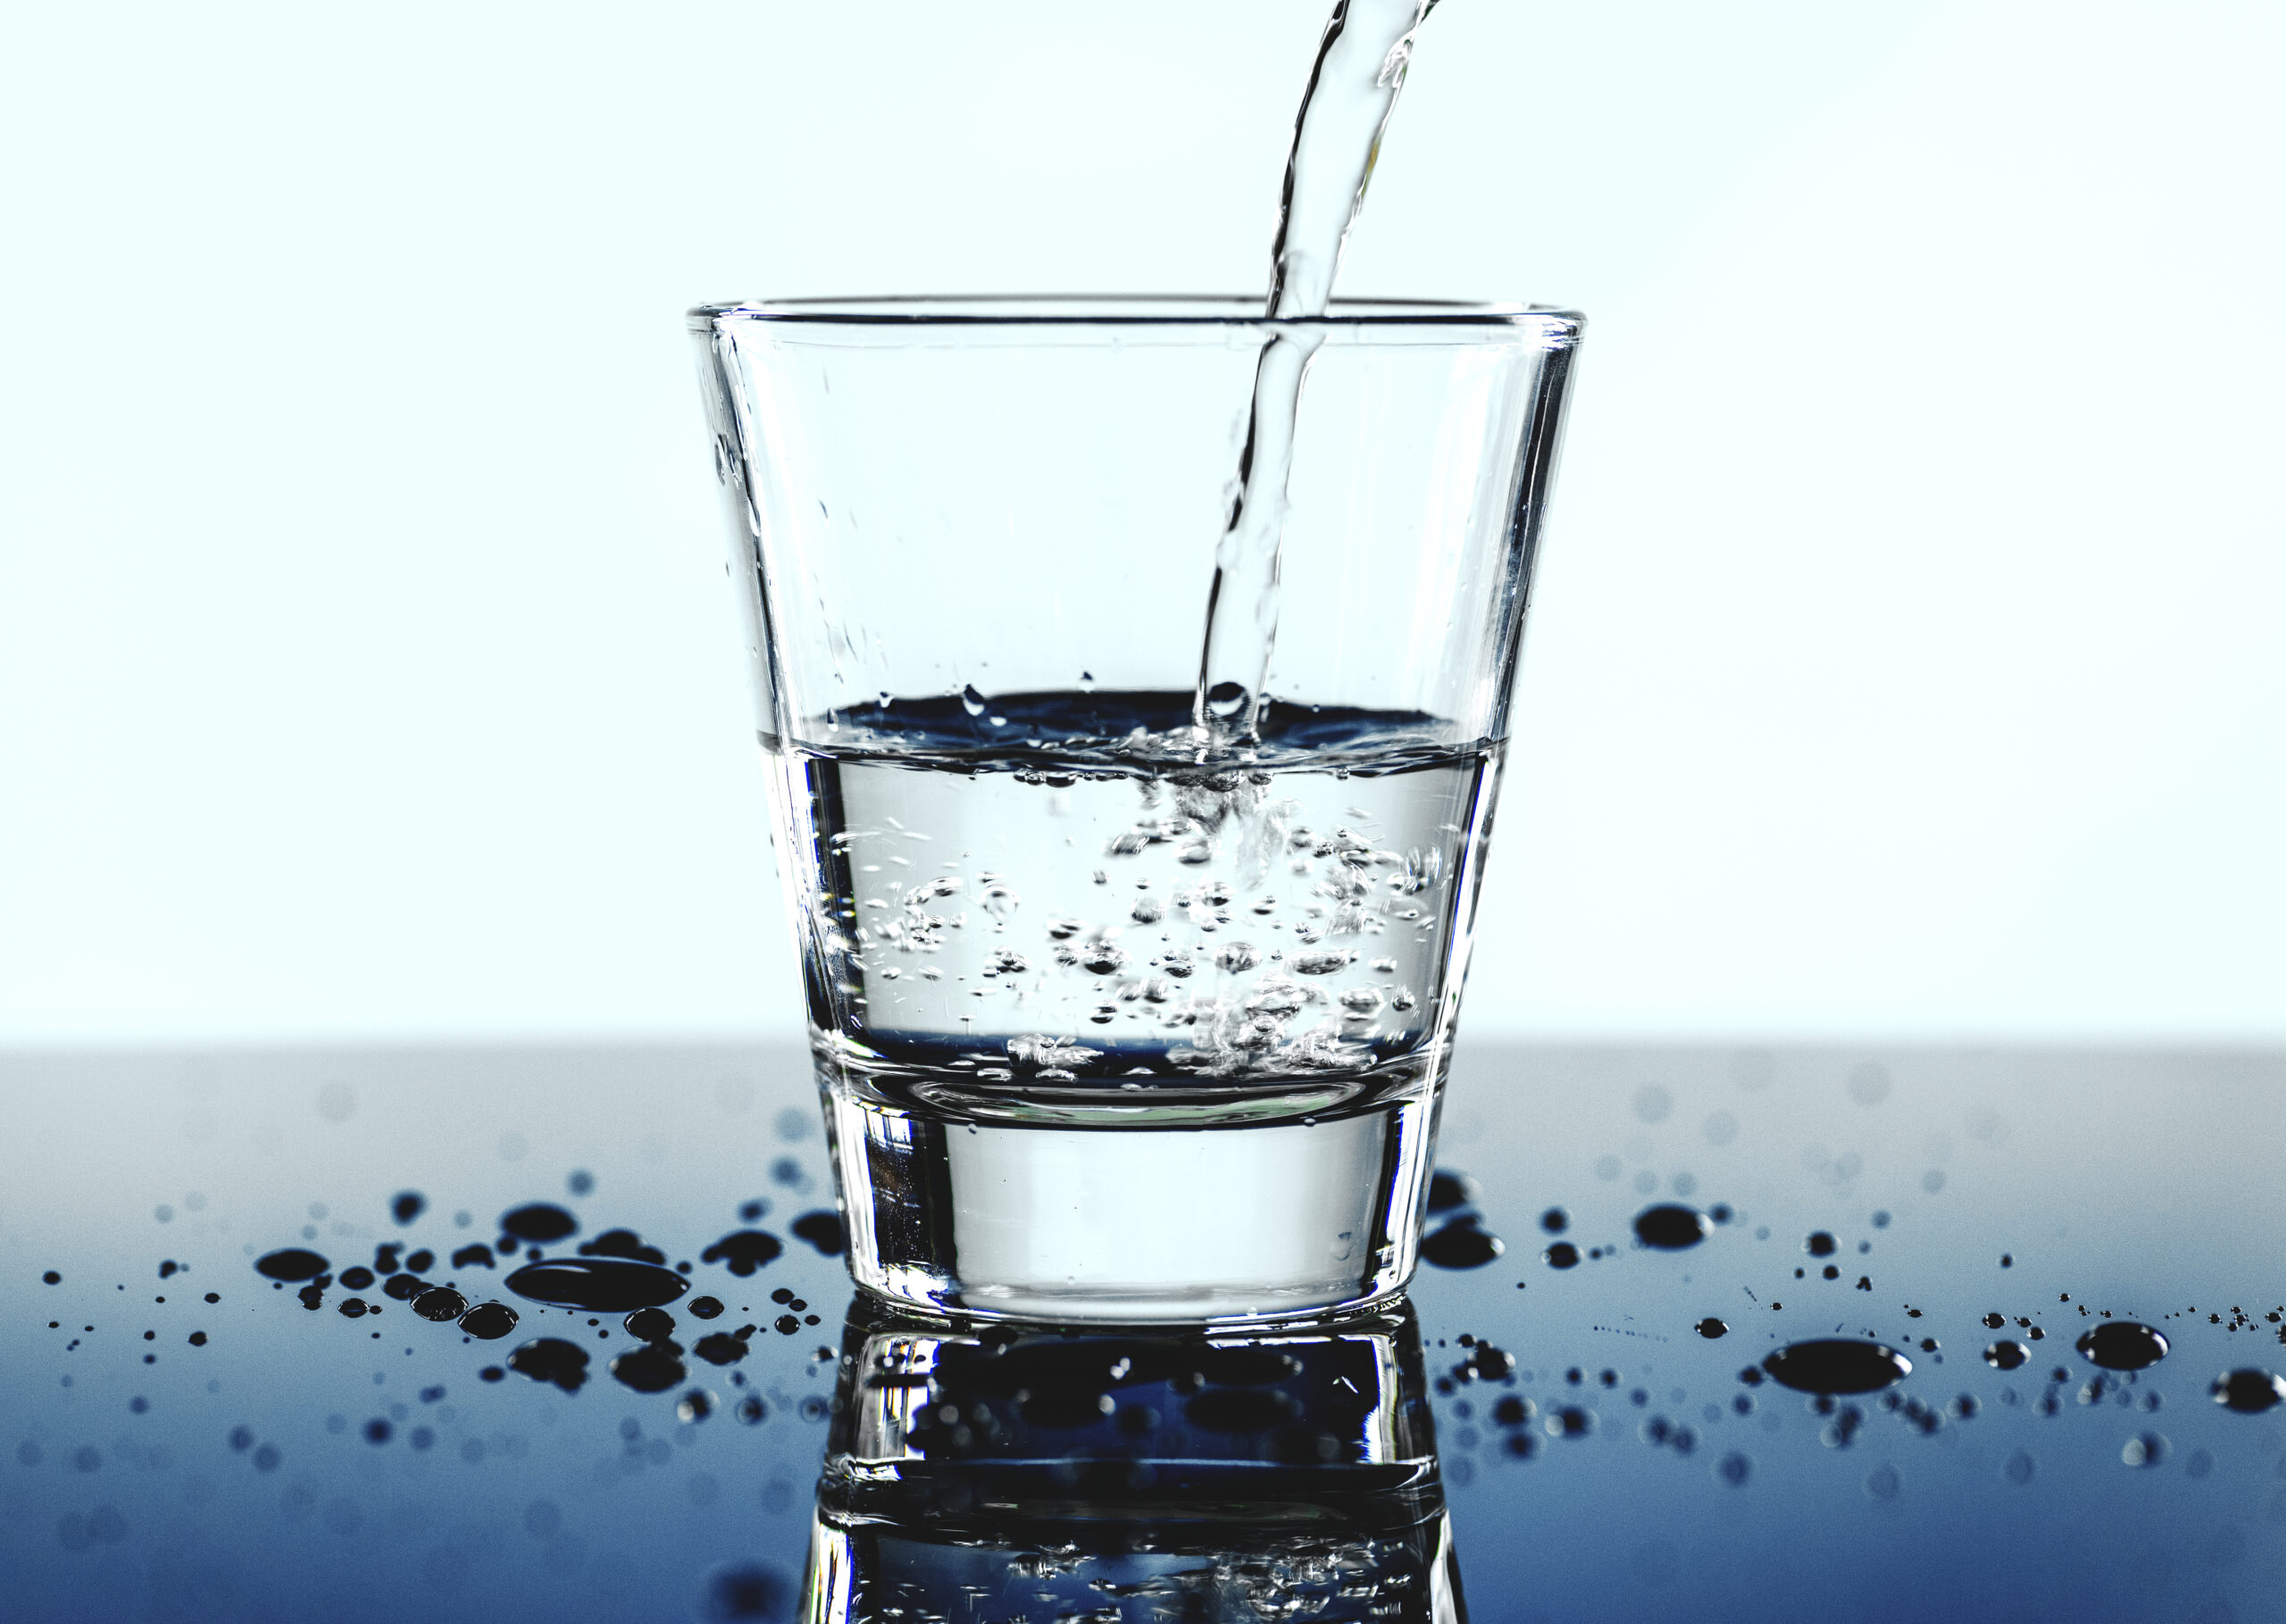 Lire la suite à propos de l’article SEMIDAO : coupure d’eau